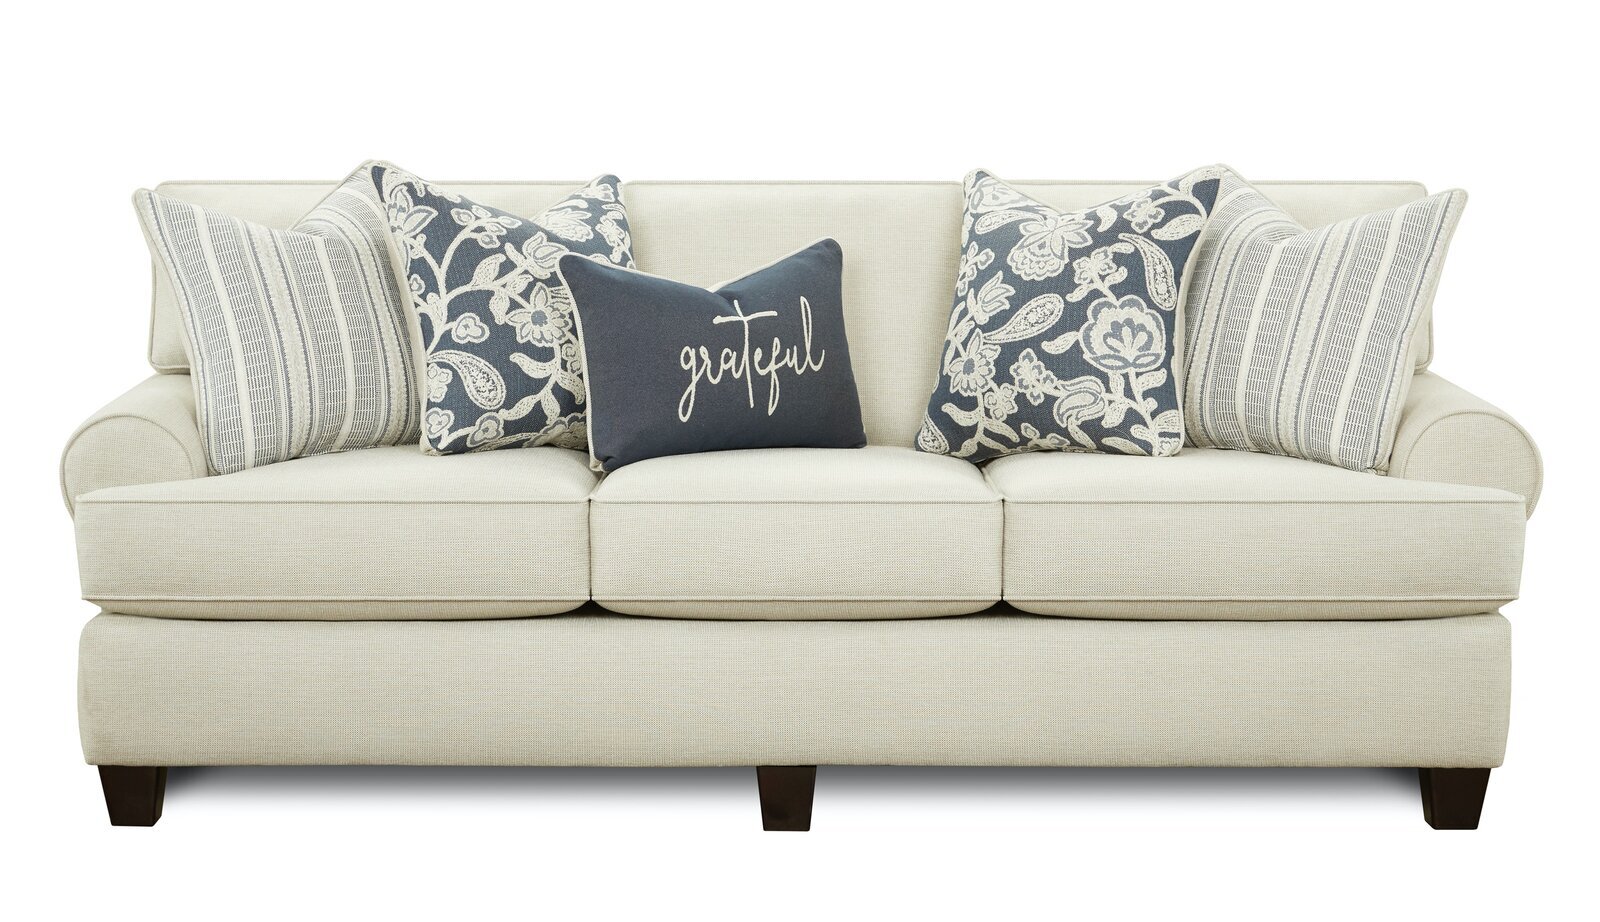 Patternson 88” Round Arm Sofa Bed